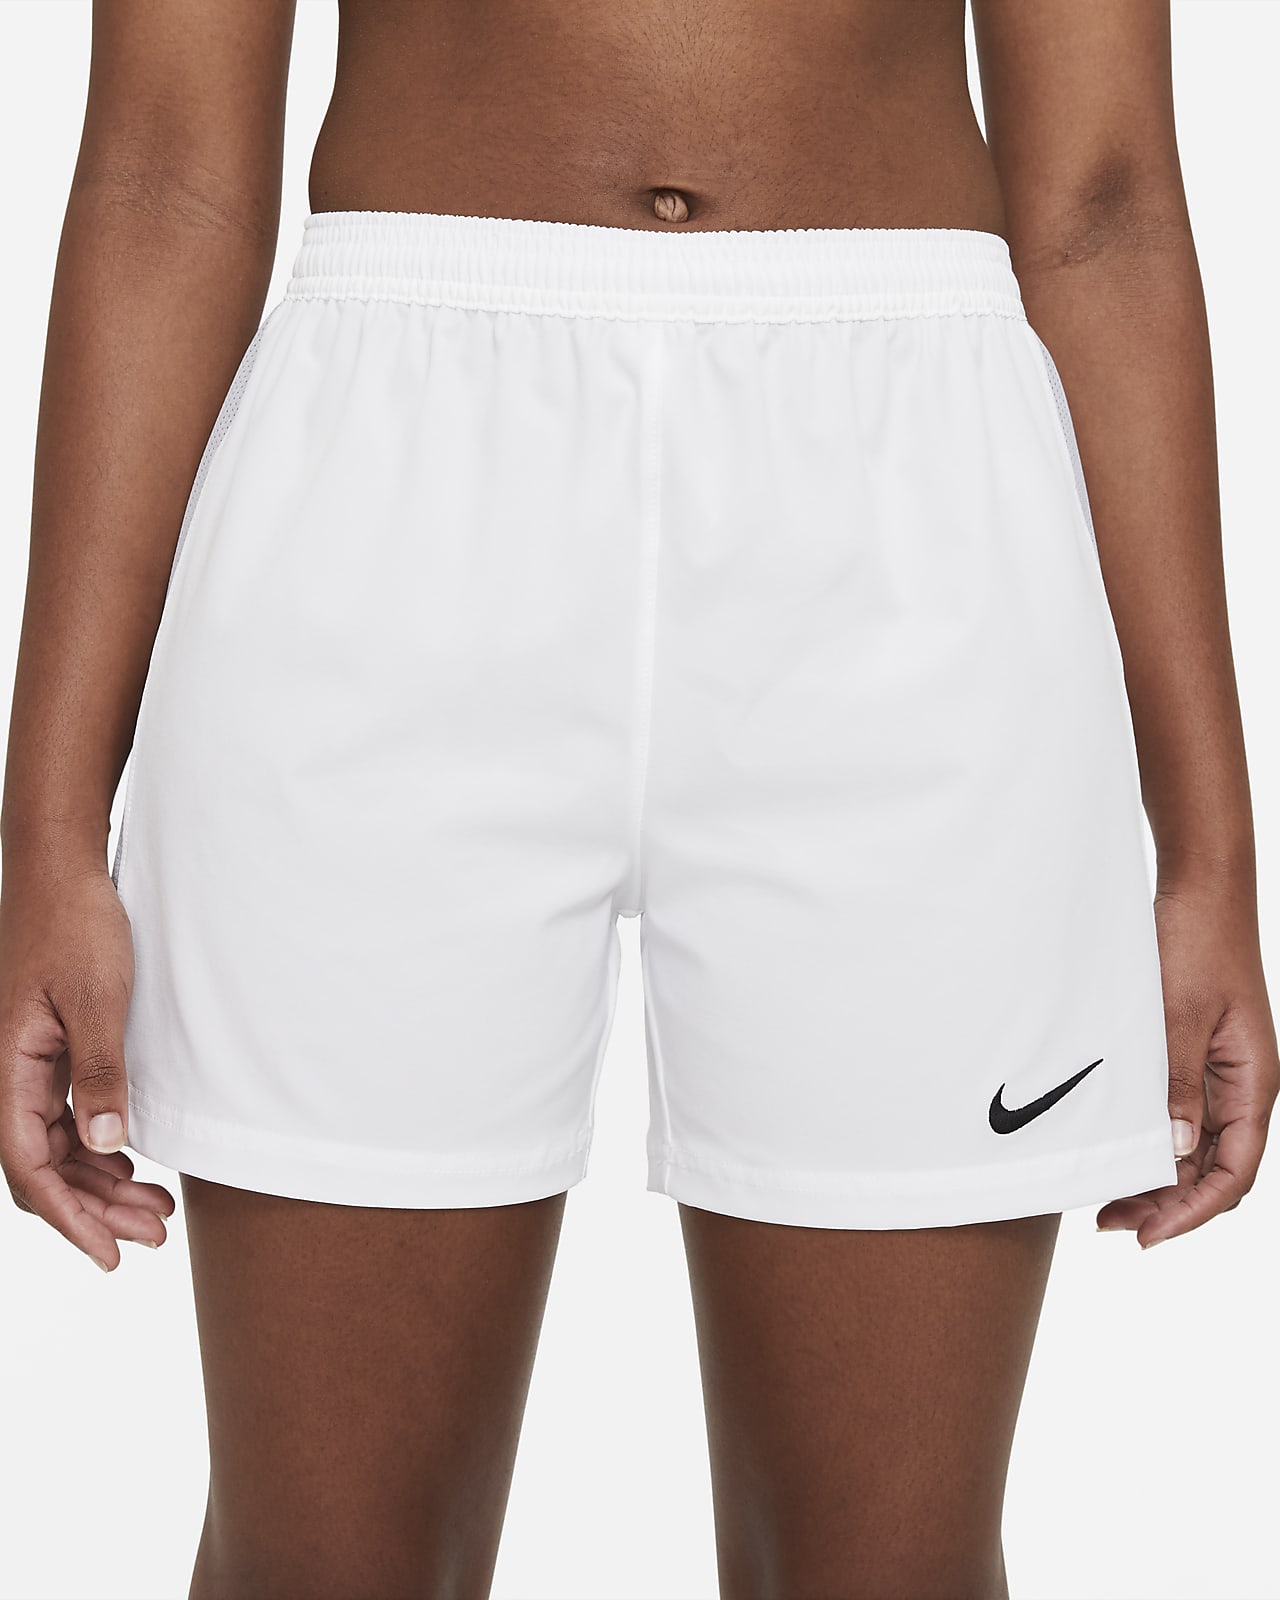 Shorts de para mujer Vapor. Nike.com